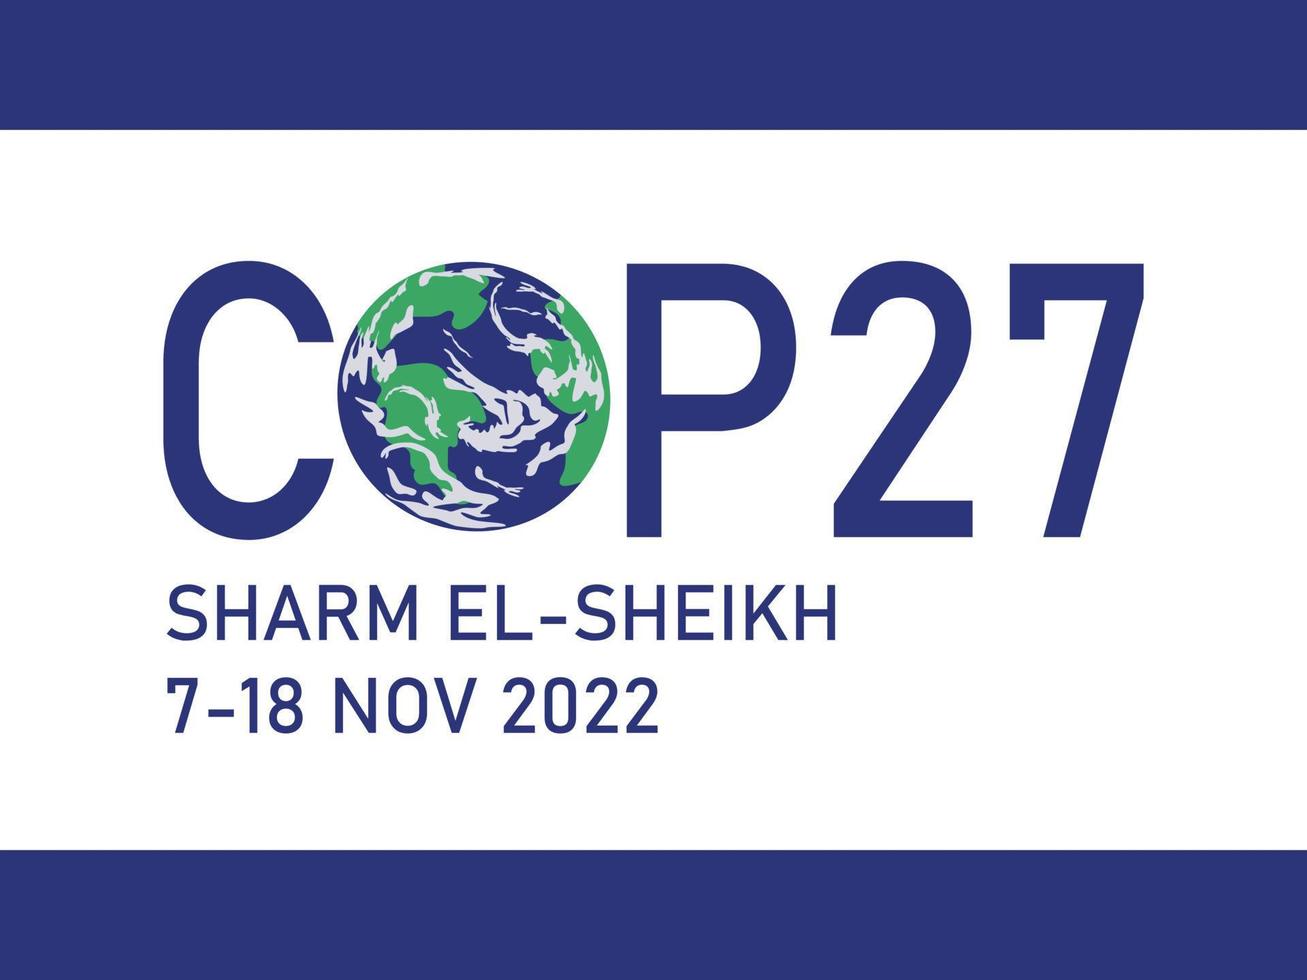 poliziotto 27 a sharm el-sheikh, egitto. 7-18 novembre 2022. Conferenza delle Nazioni Unite sui cambiamenti climatici. vertice internazionale sul clima. vettore